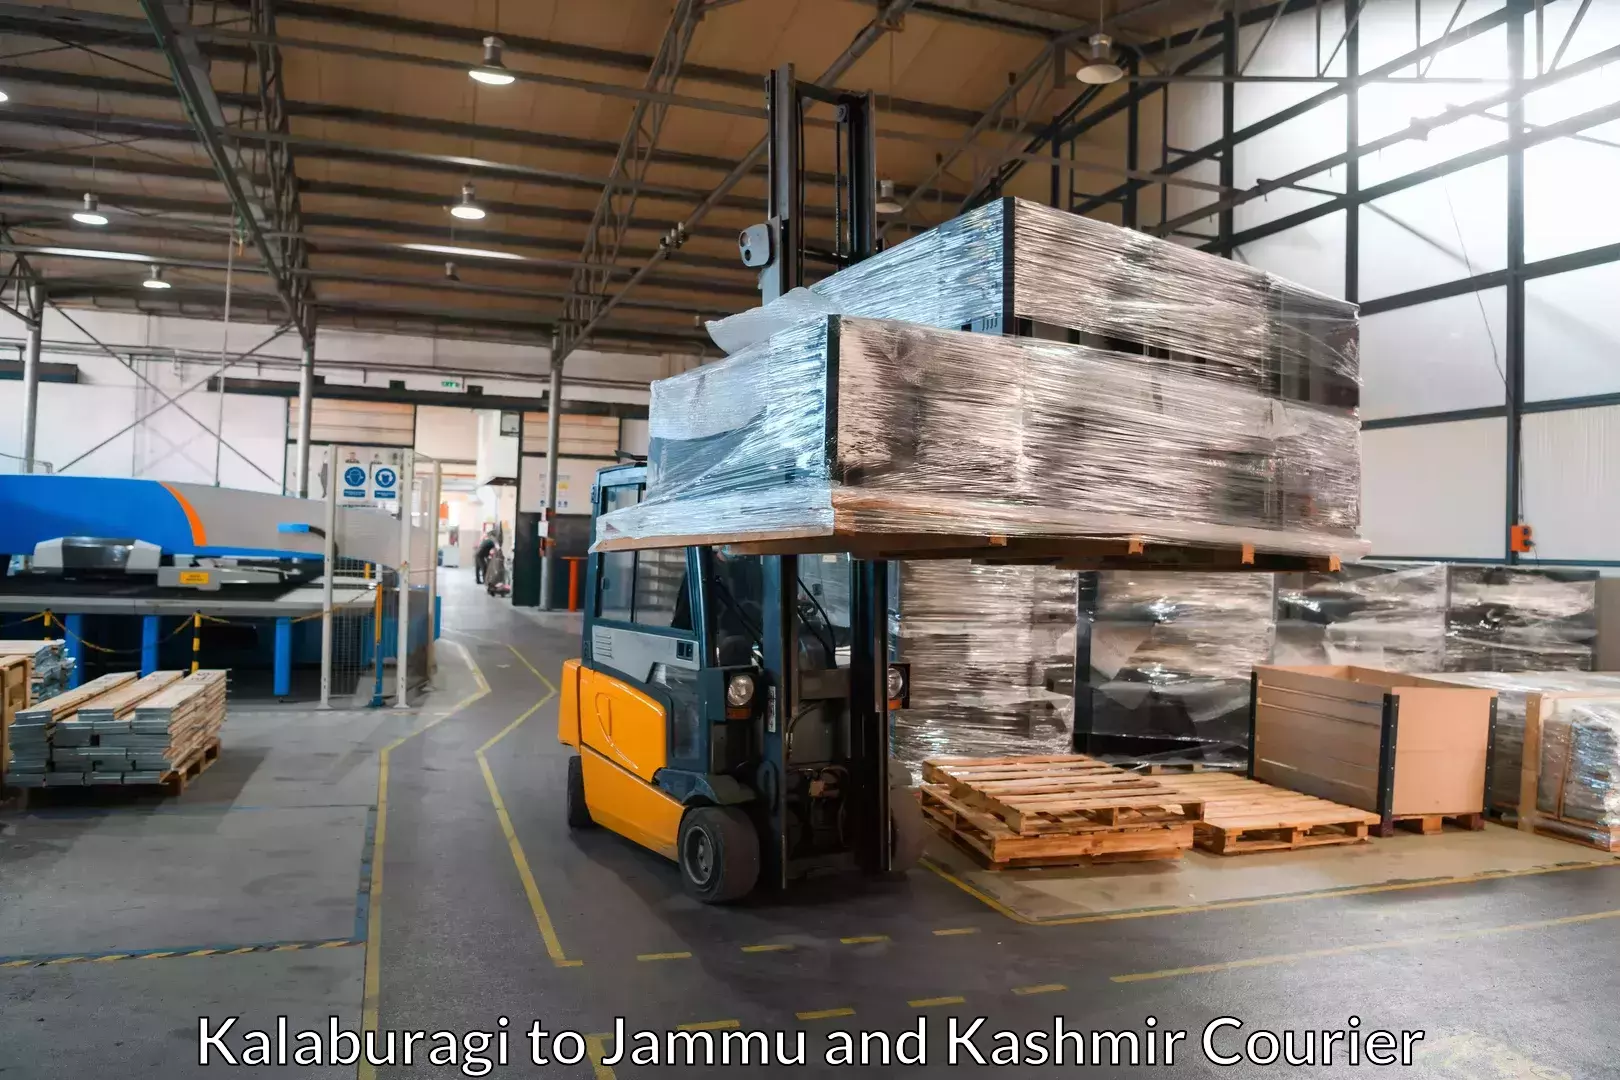 Trusted moving company Kalaburagi to Katra